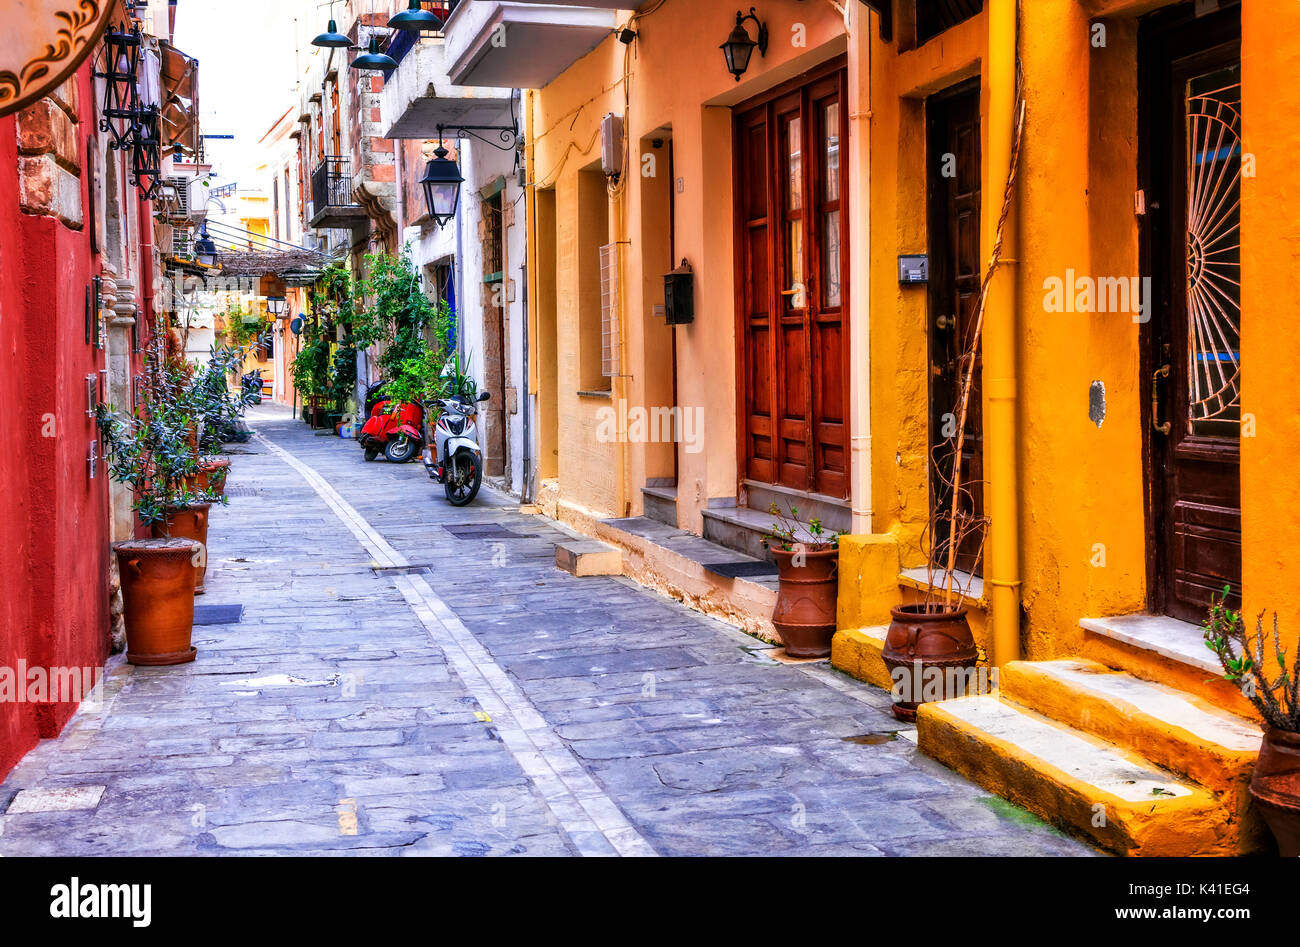 Charmantes rues colorées de la vieille ville de Réthymnon. L'île de Crète, Grèce Banque D'Images